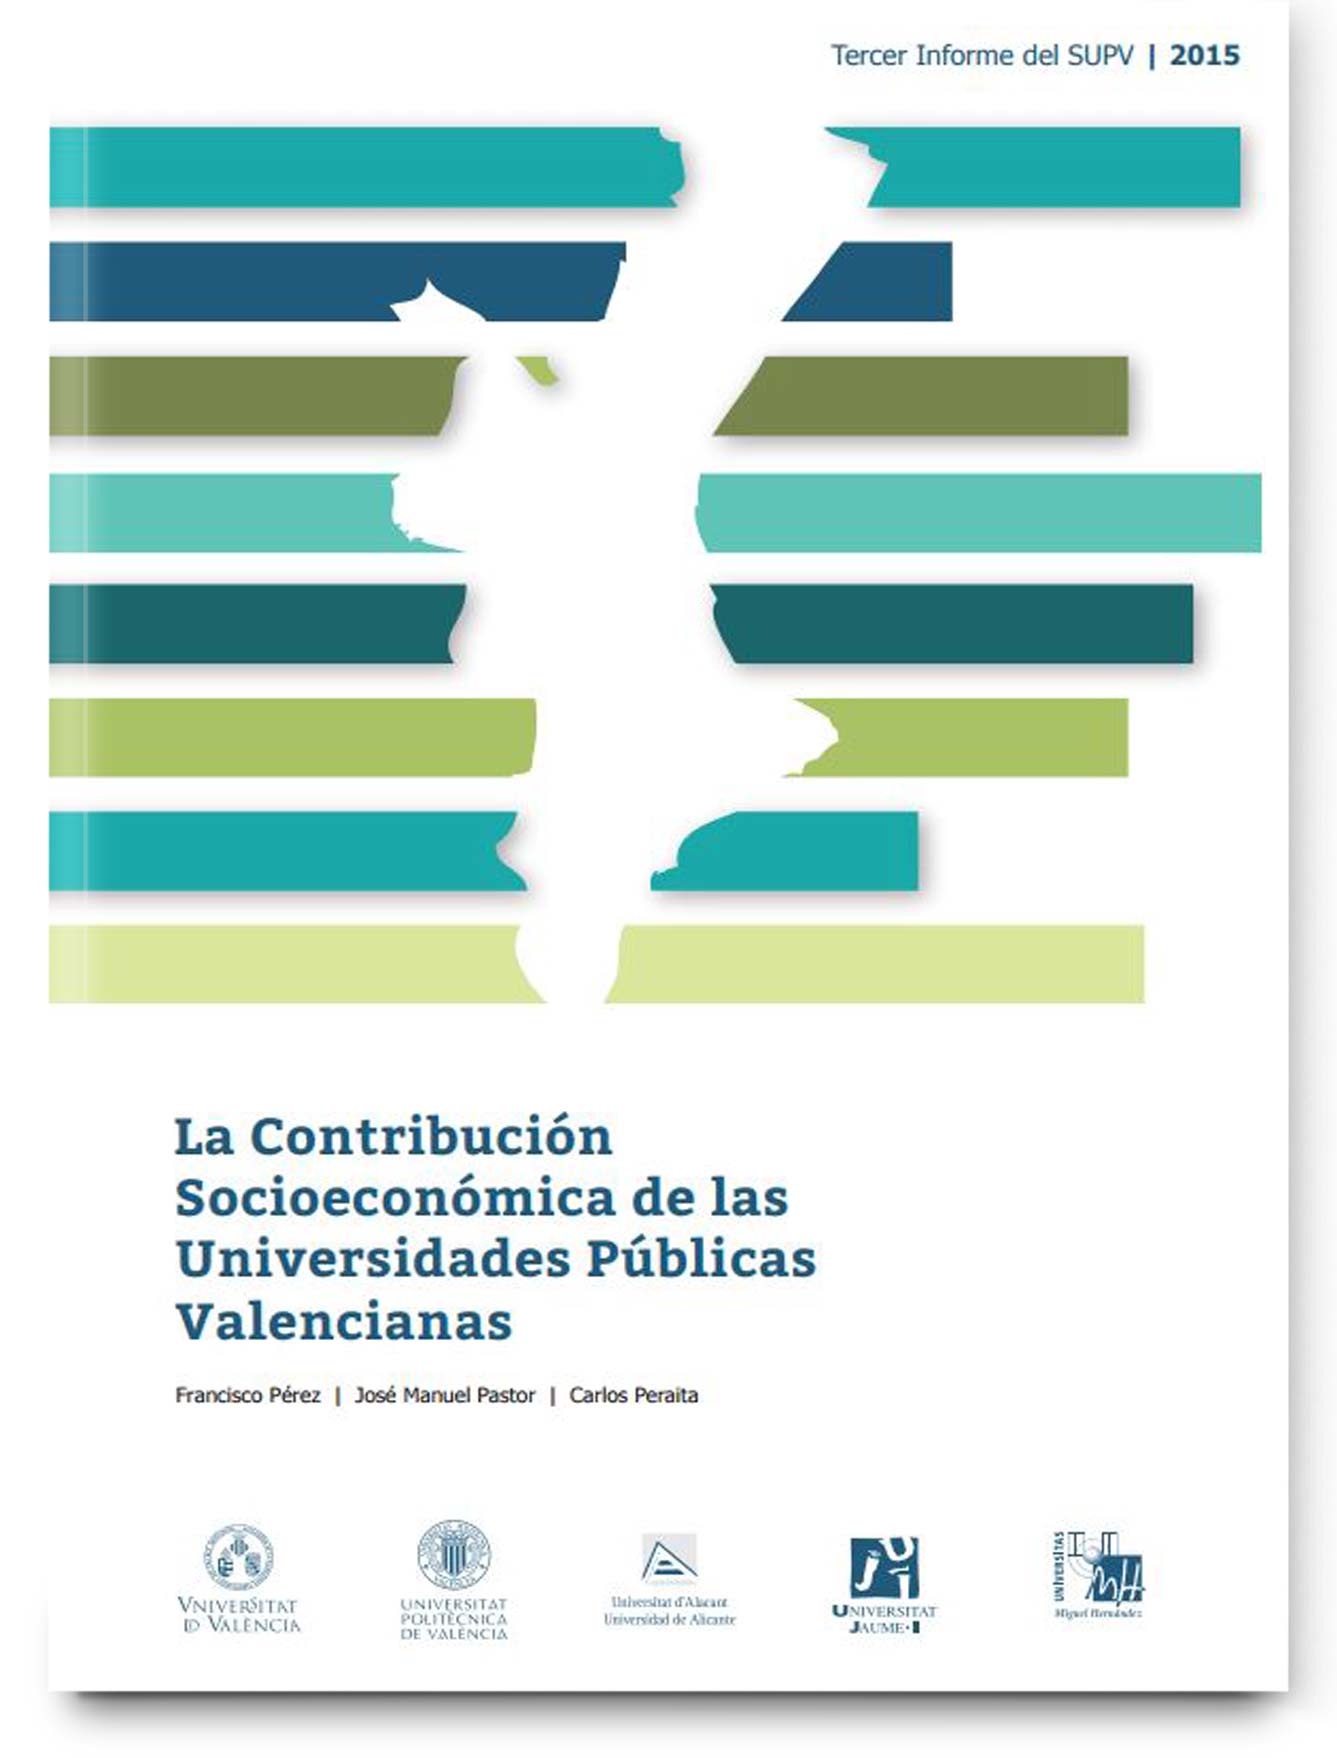 La contribución socioeconómica de las universidades públicas valencianas